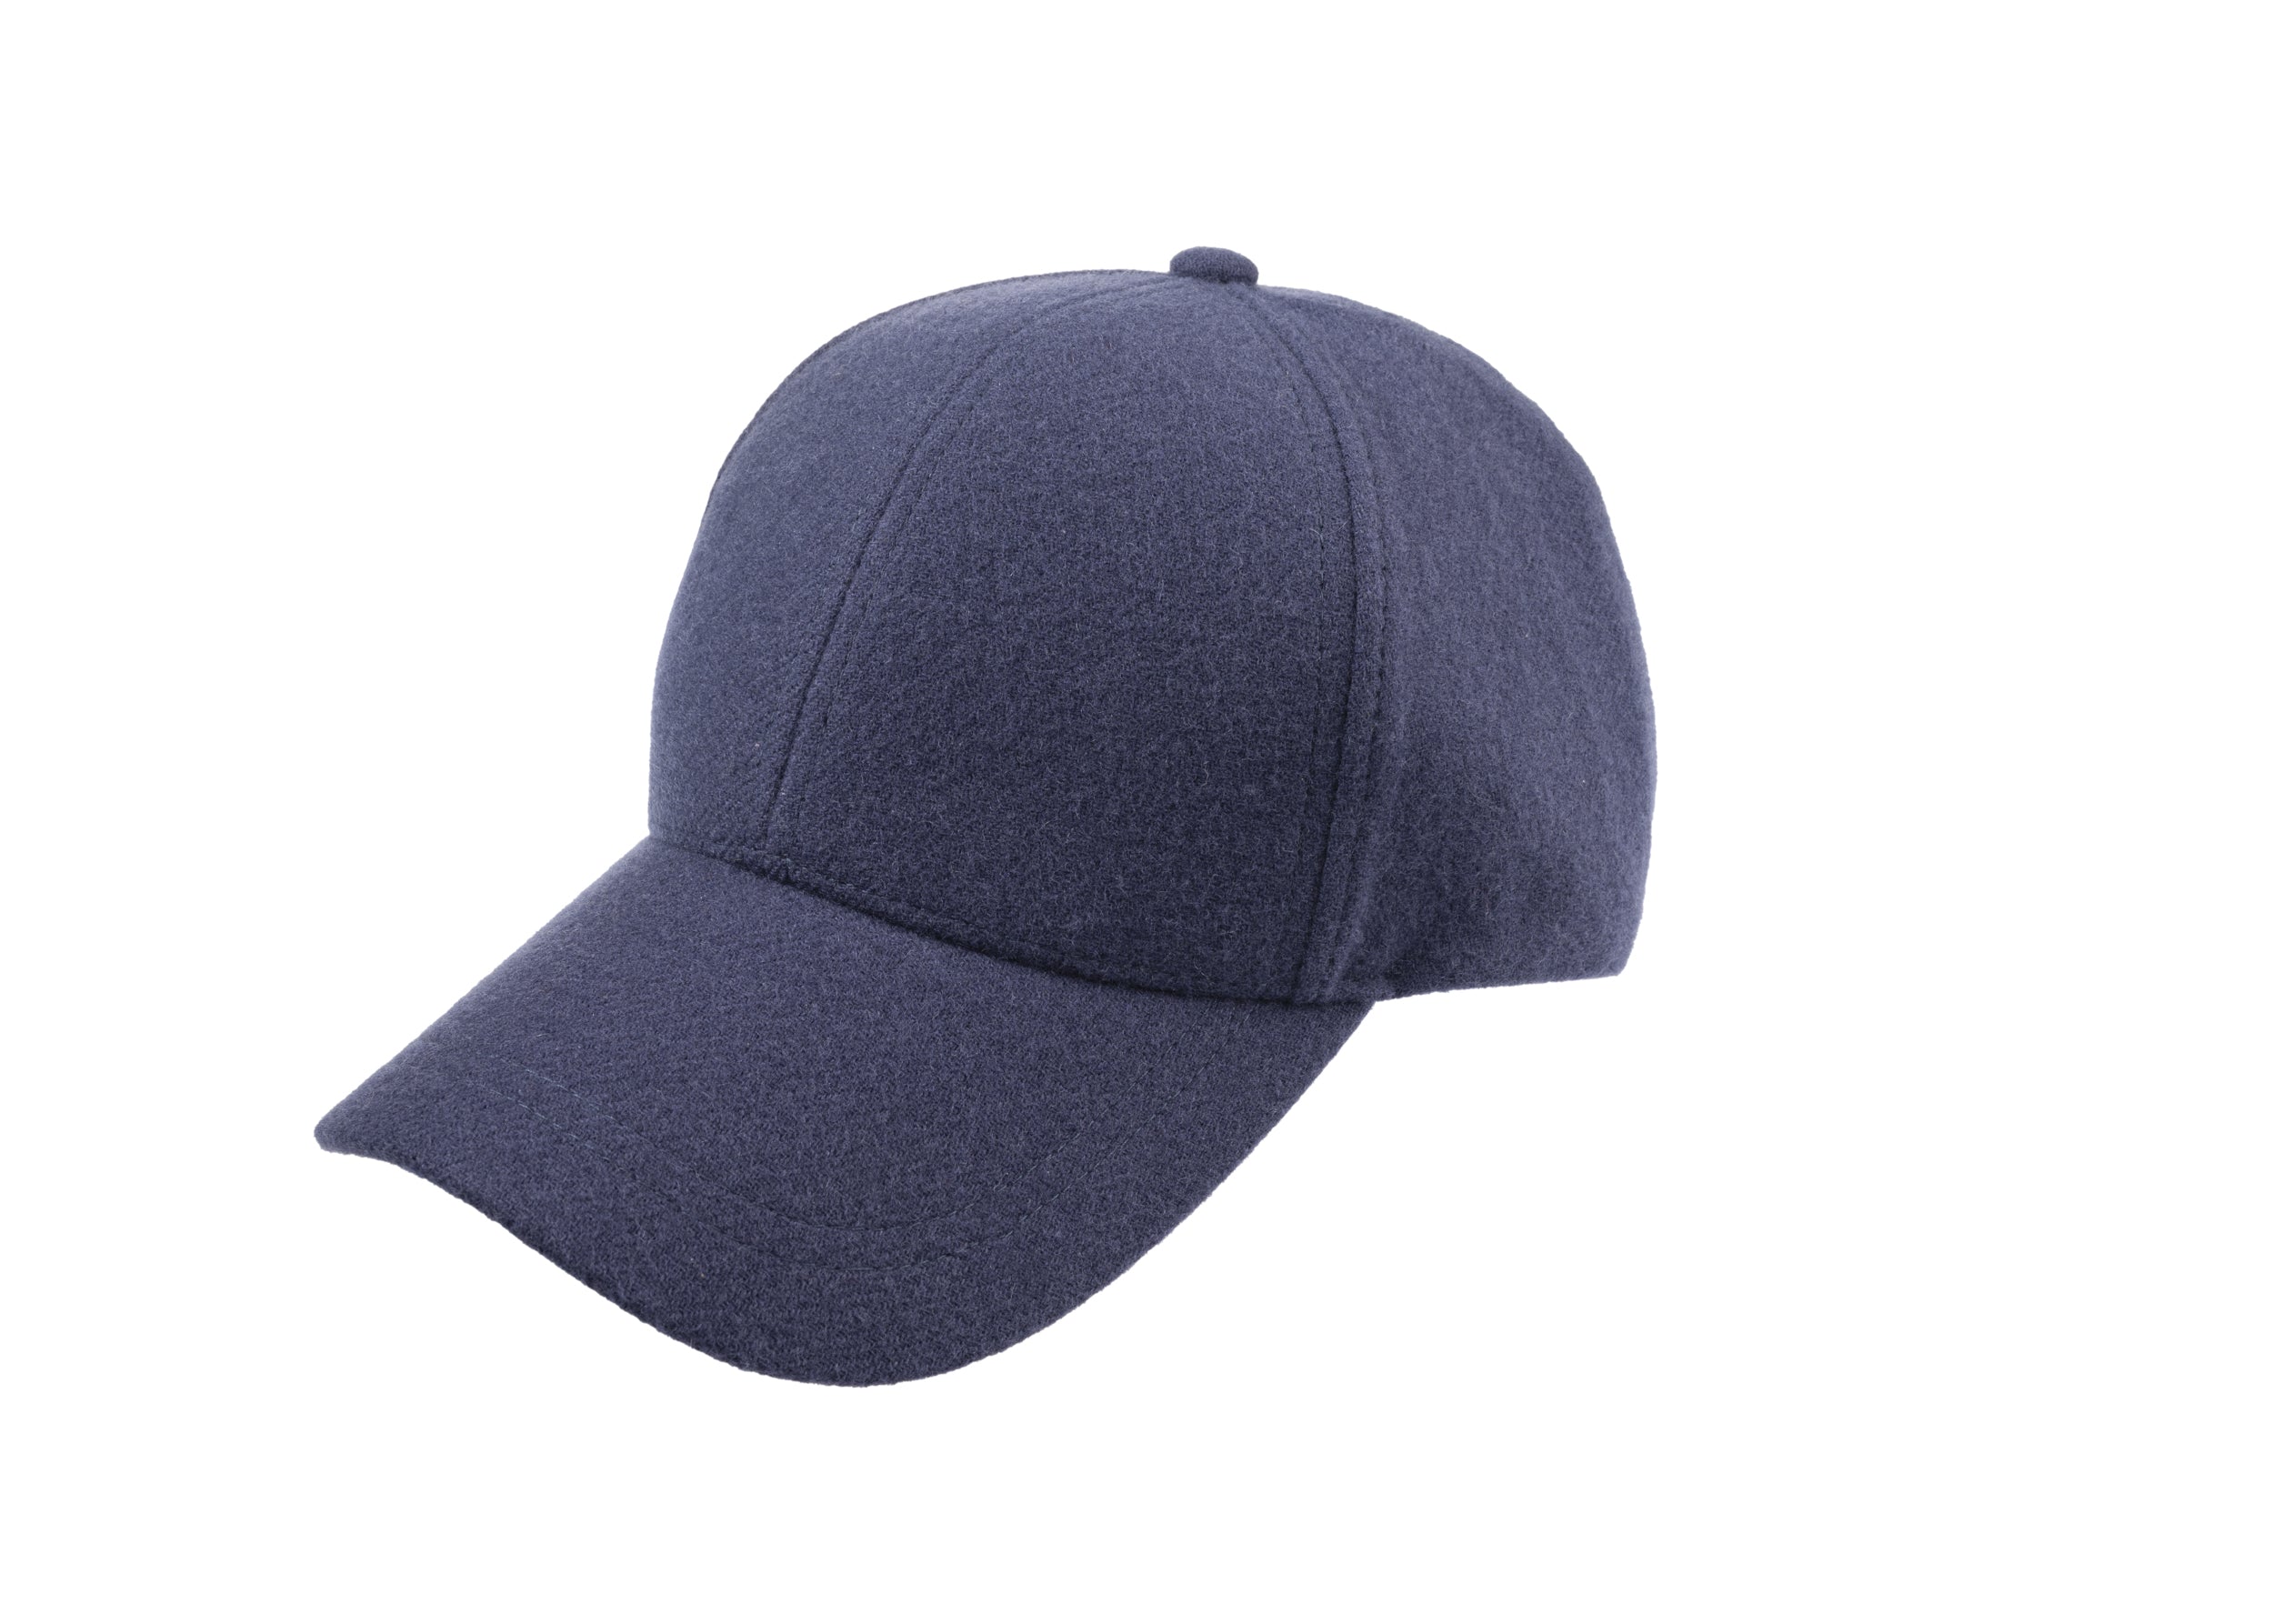 Josh baseball cap in cashmere/wool blend fabric in Blue